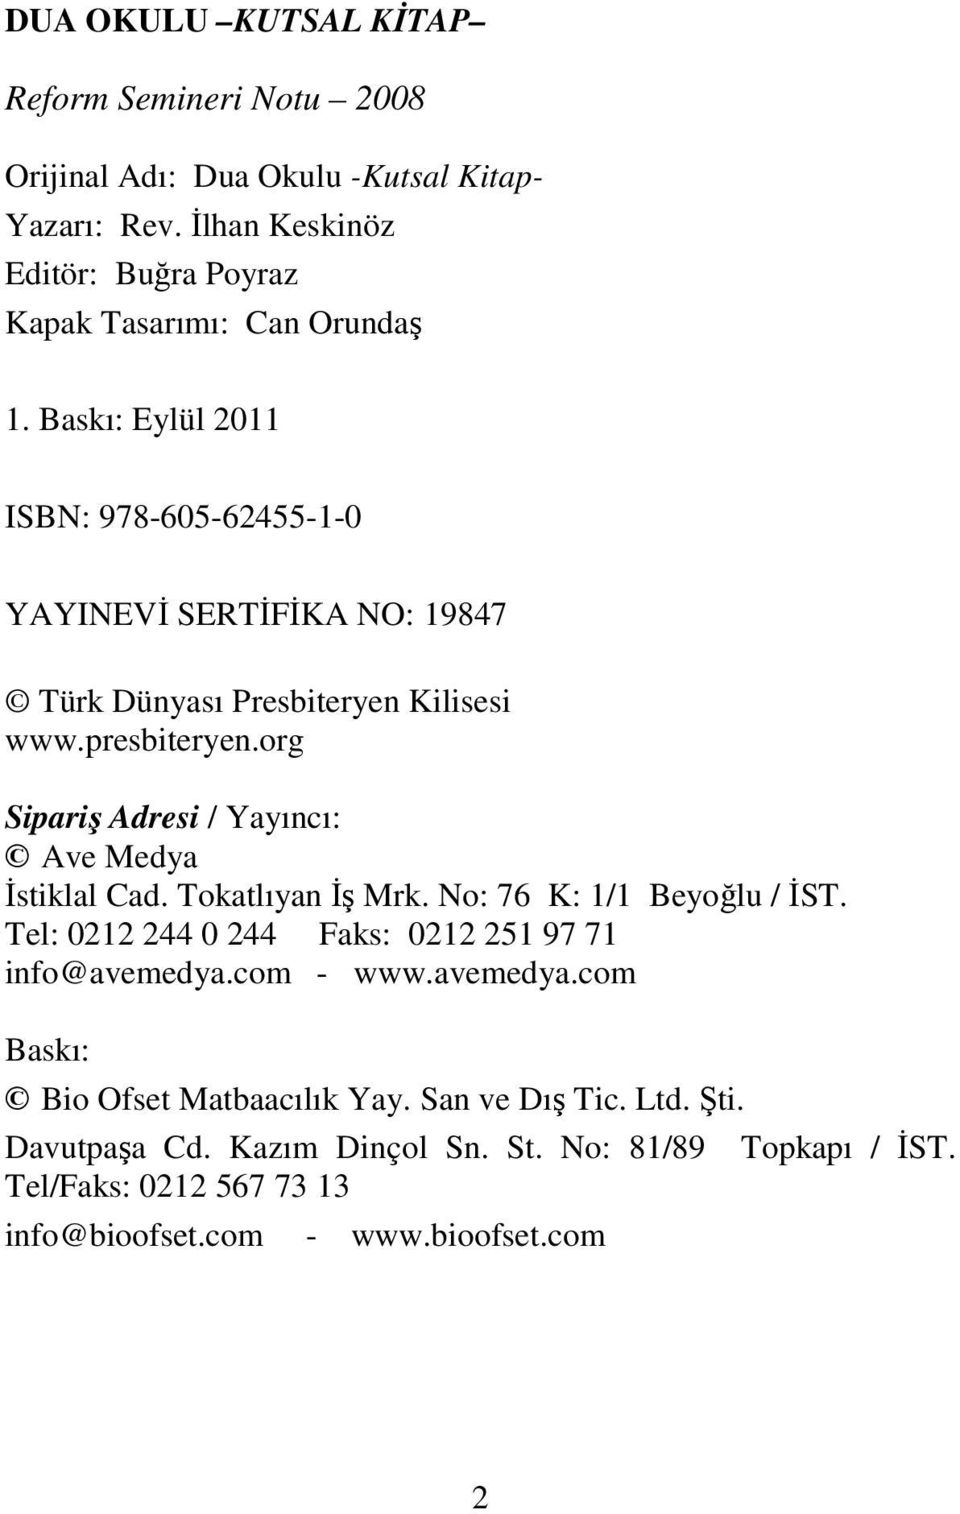 Baskı: Eylül 2011 ISBN: 978-605-62455-1-0 YAYINEVİ SERTİFİKA NO: 19847 Türk Dünyası Presbiteryen Kilisesi www.presbiteryen.